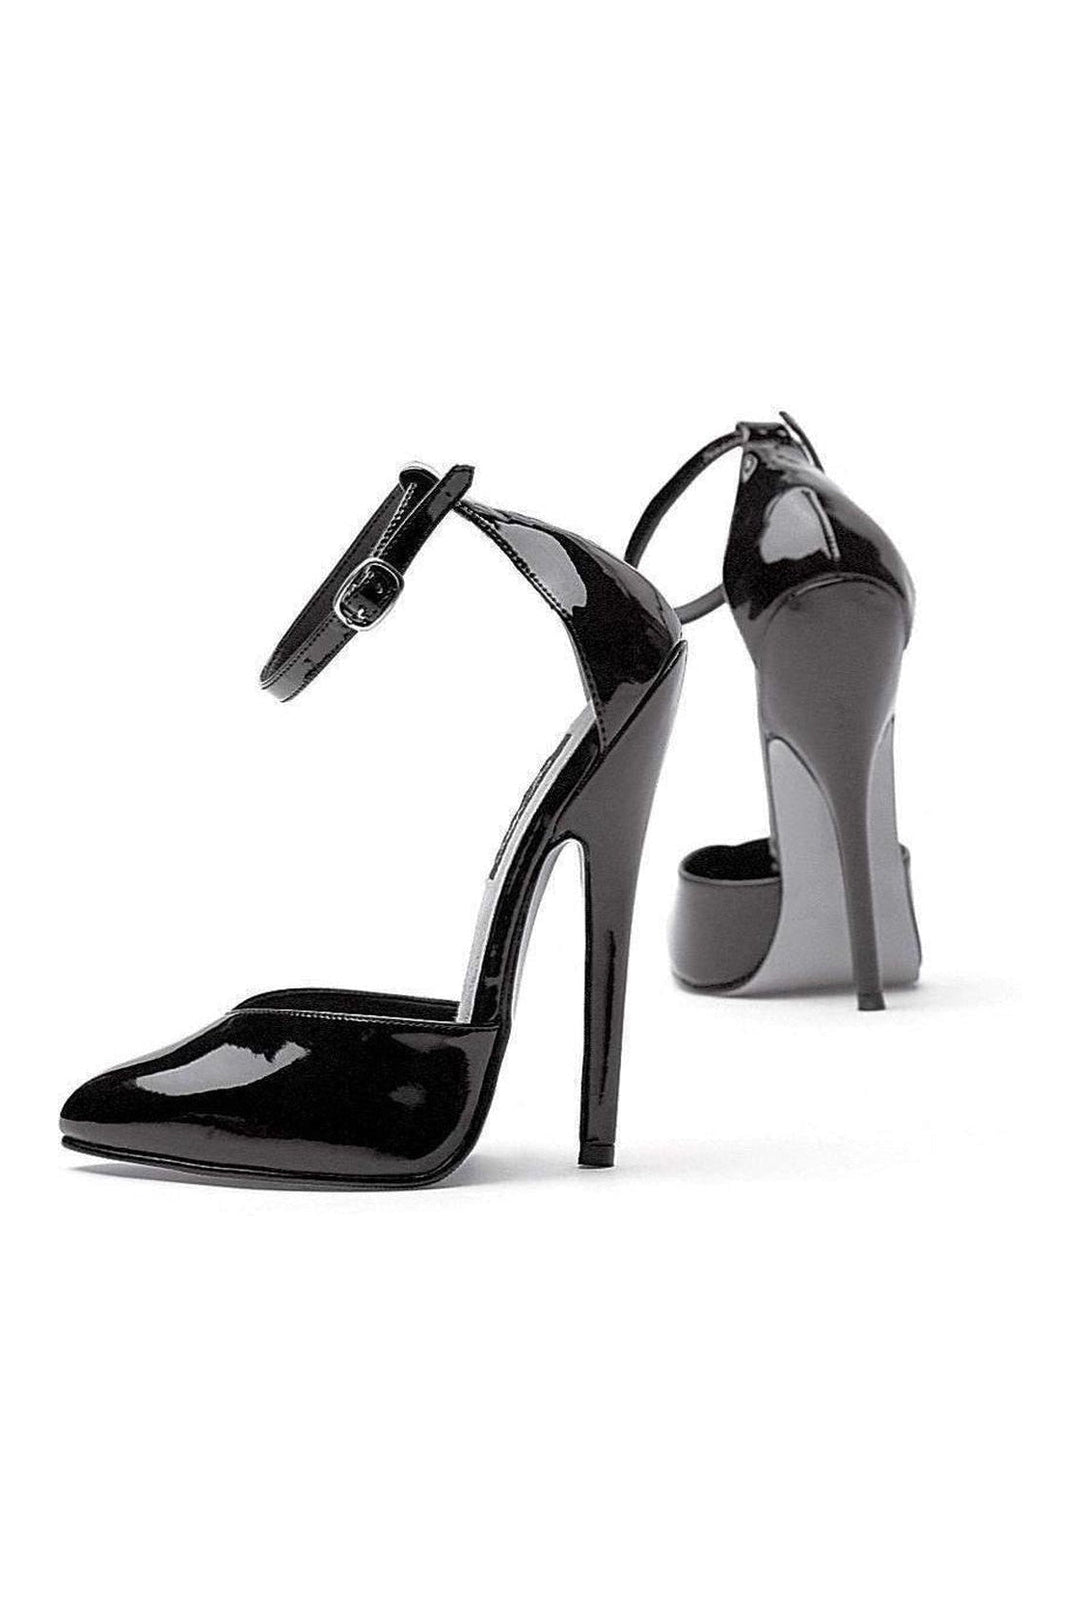 8265 Pump | Black Patent-Ellie Shoes-SEXYSHOES.COM